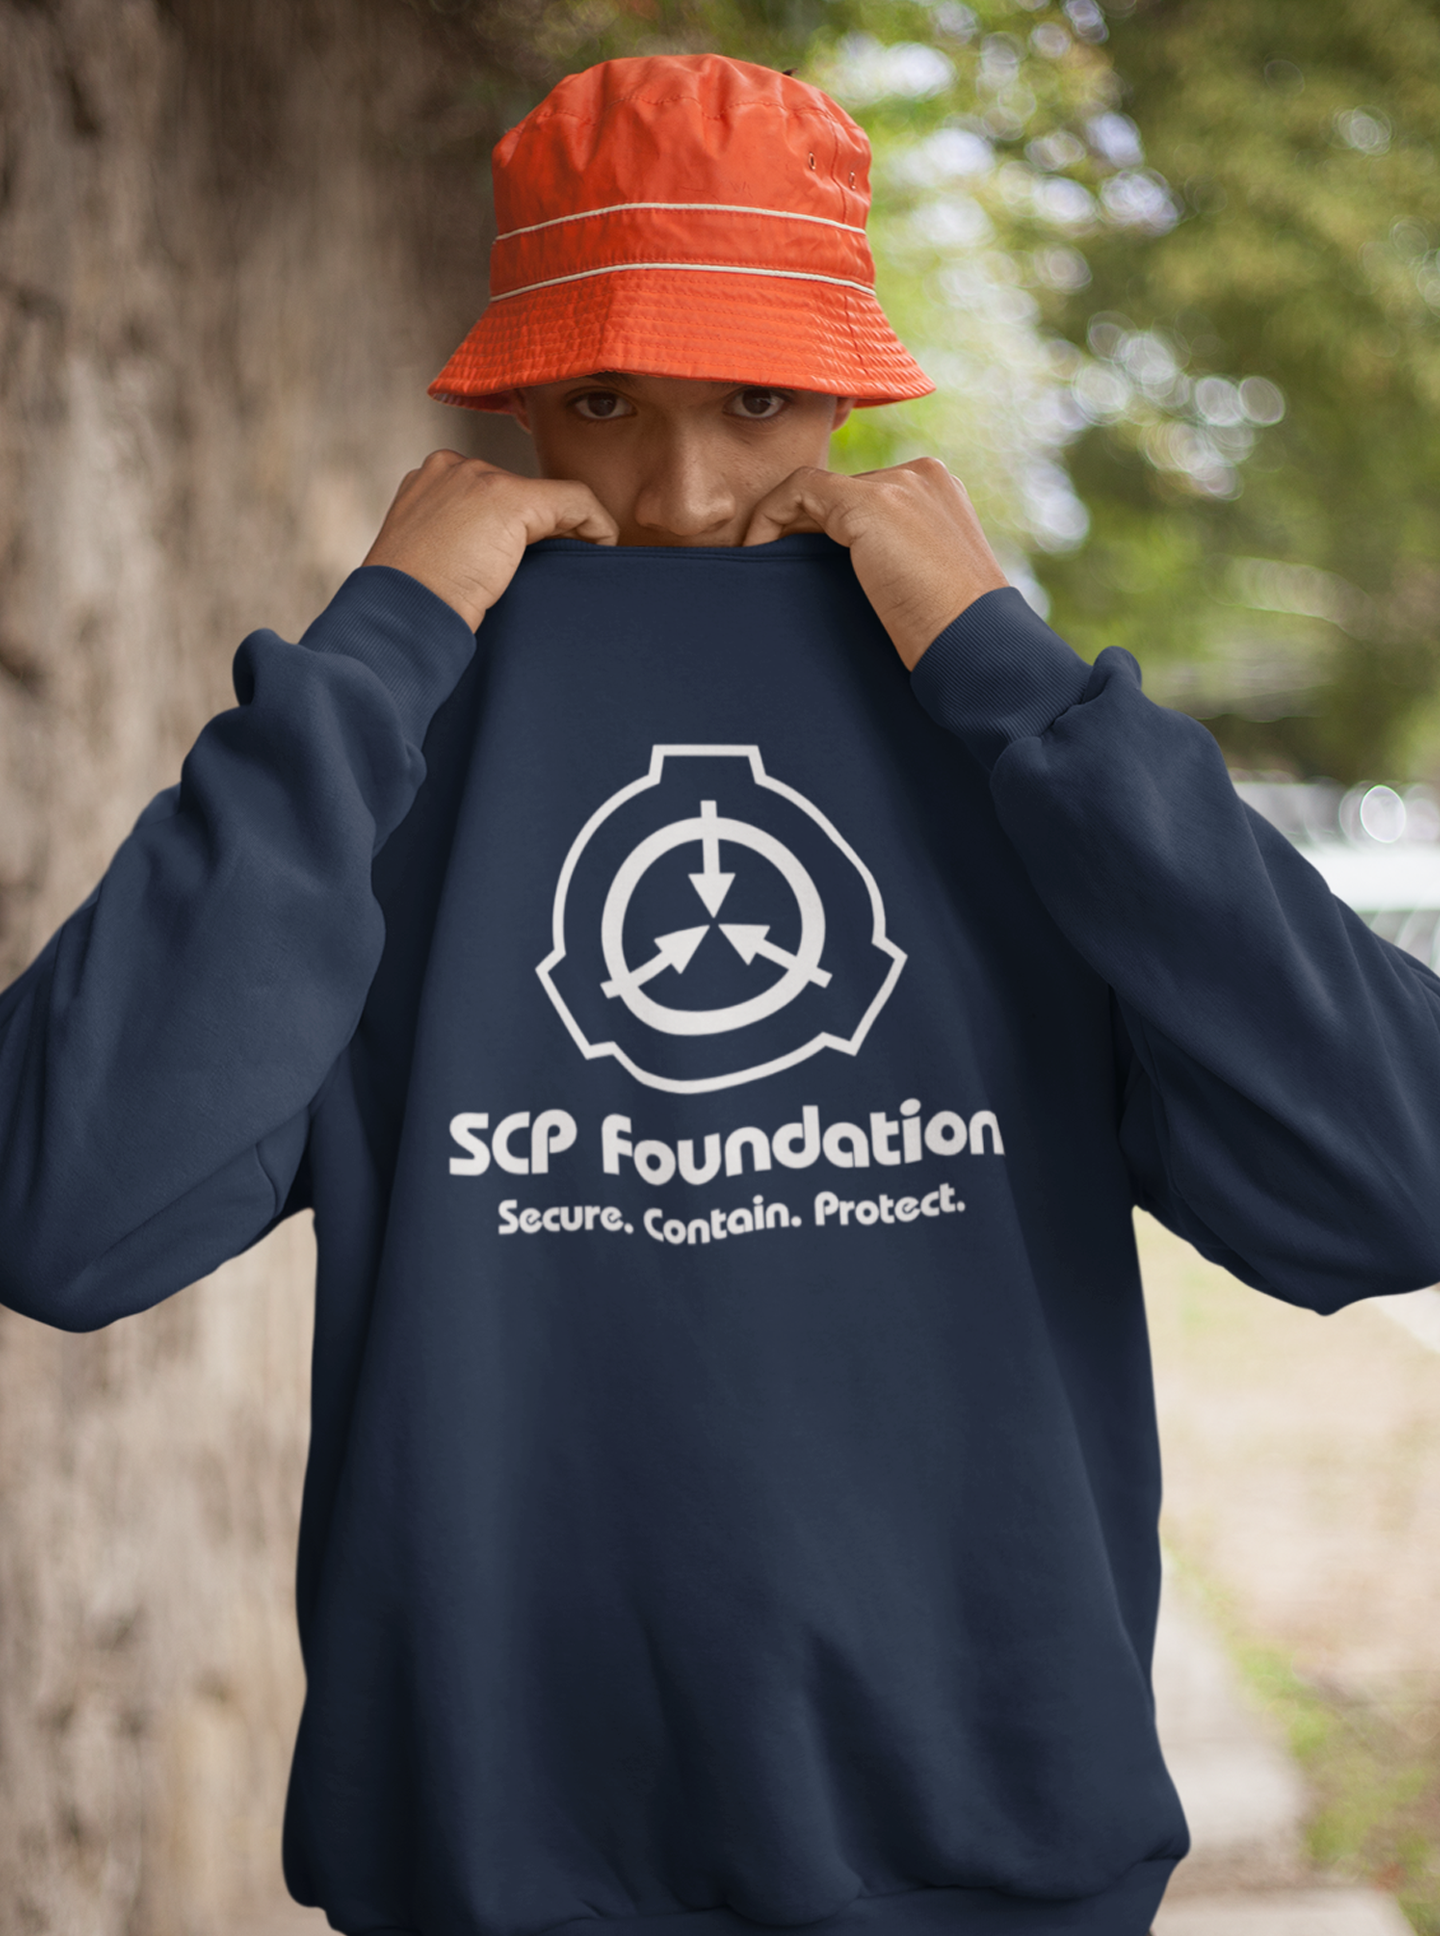 SCP Foundation Insignia (White)